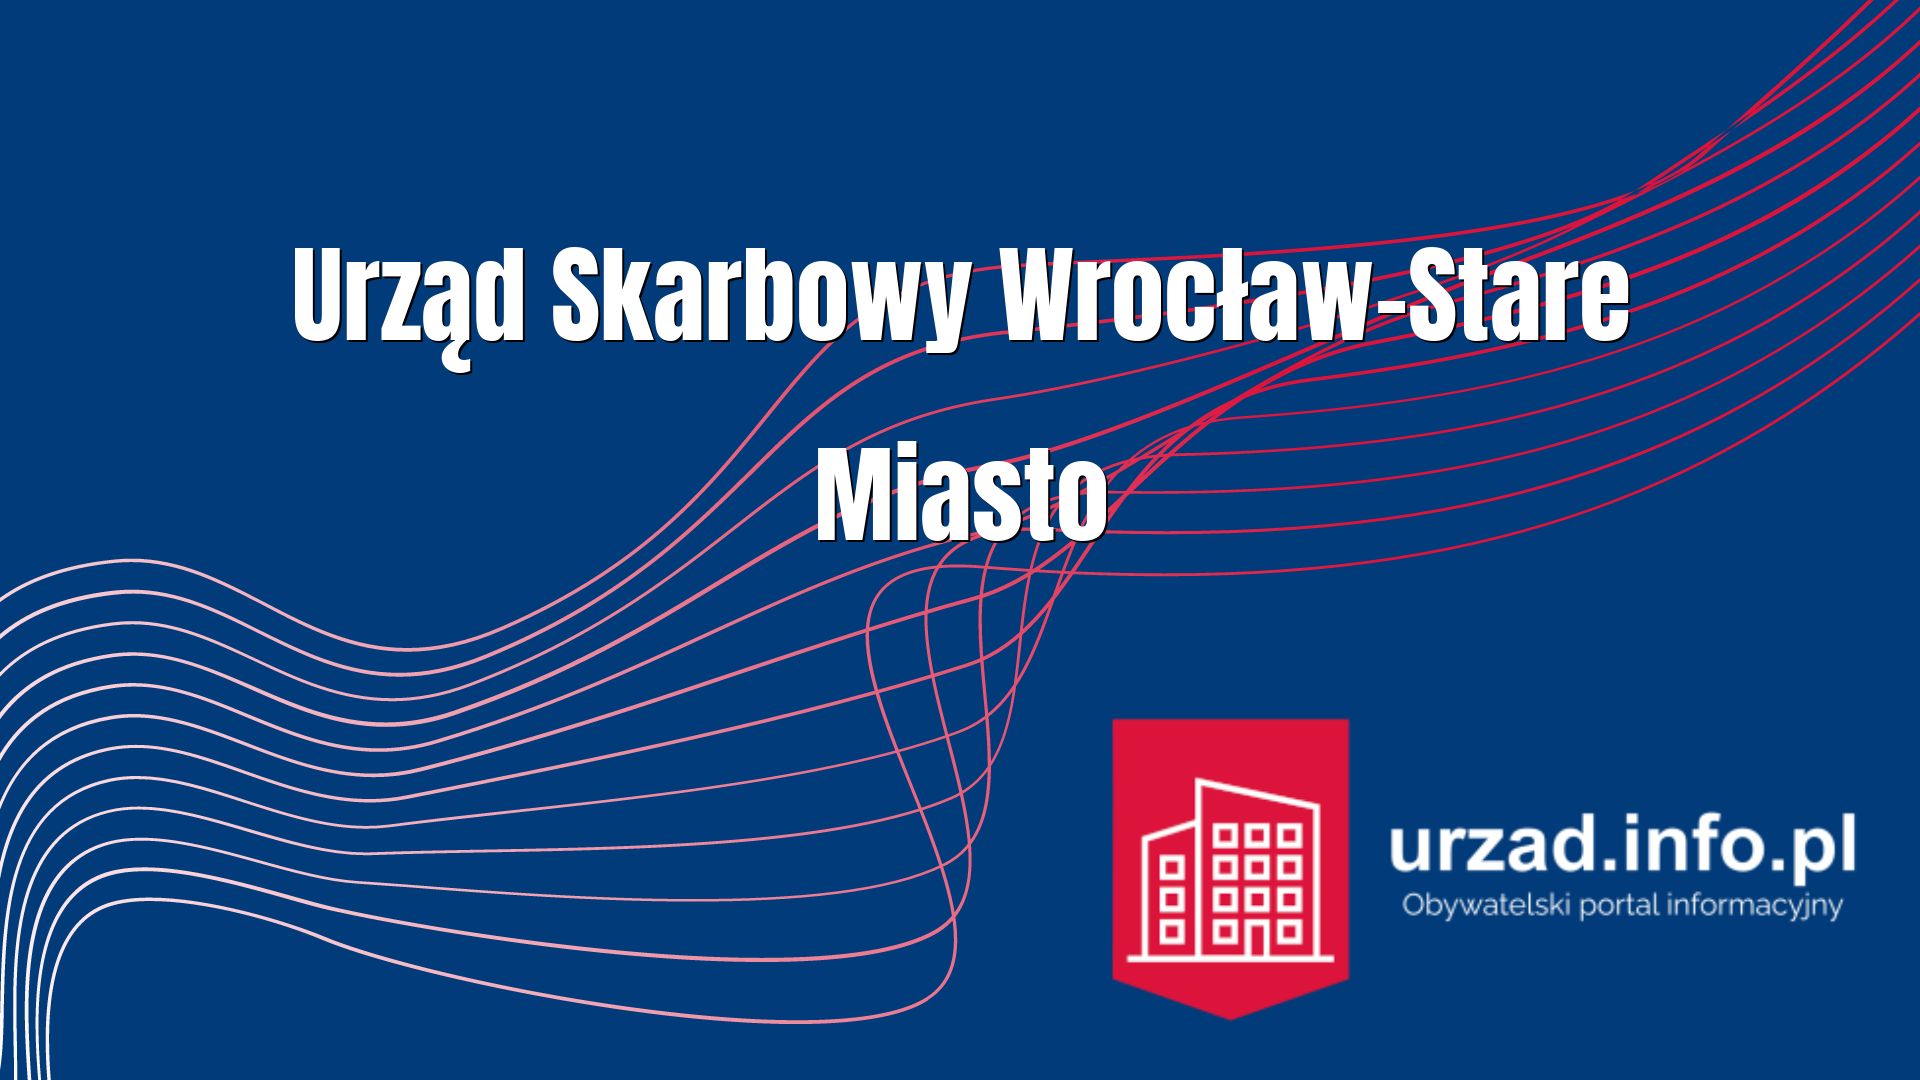 Urząd Skarbowy we Wrocławiu Stare Miasto